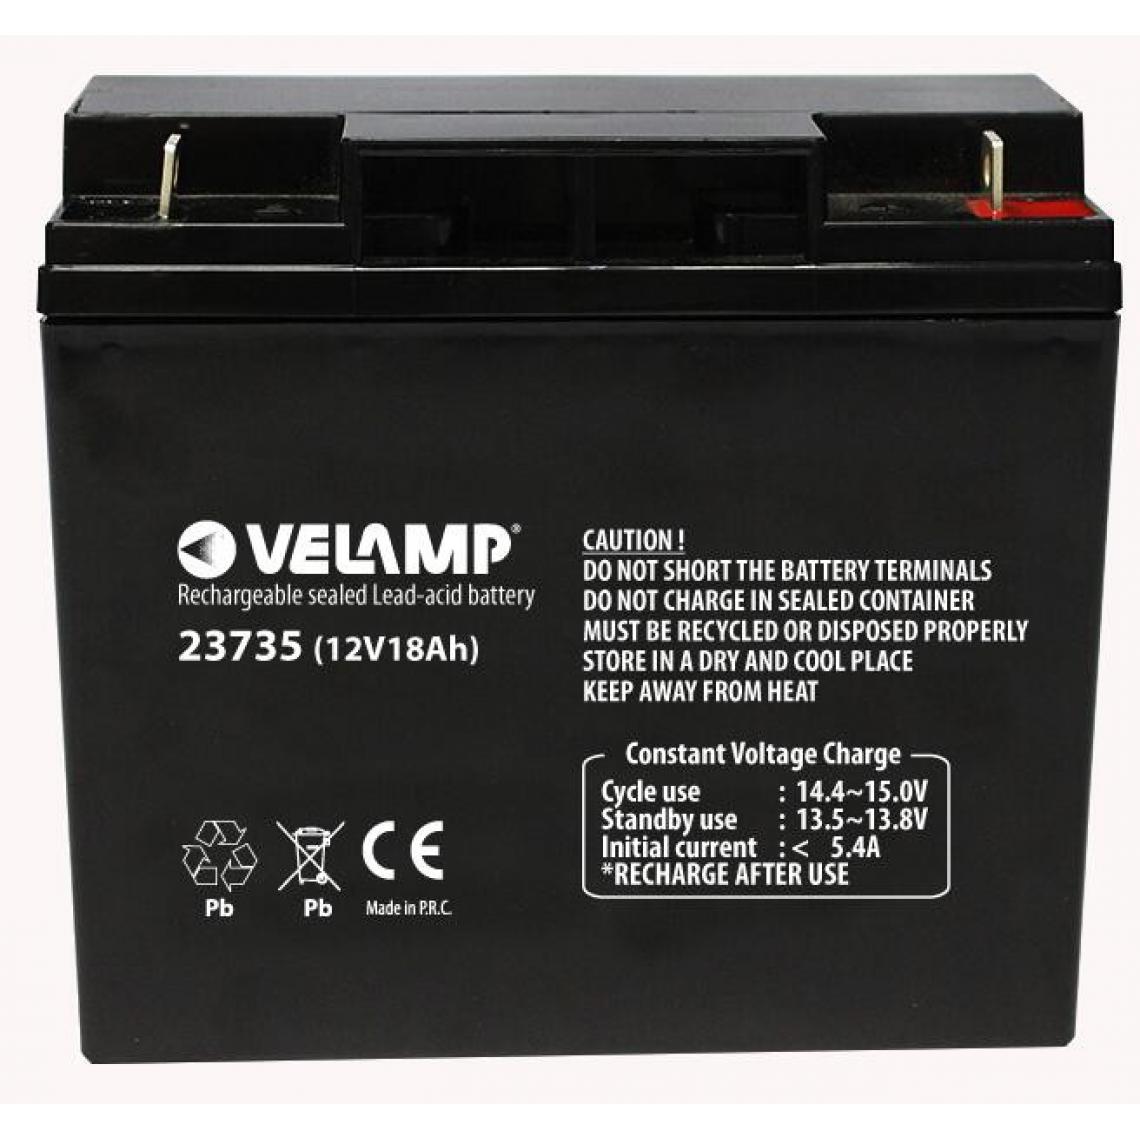 Velamp - Batterie rechargeable au plomb 12V 18Ah - Piles rechargeables